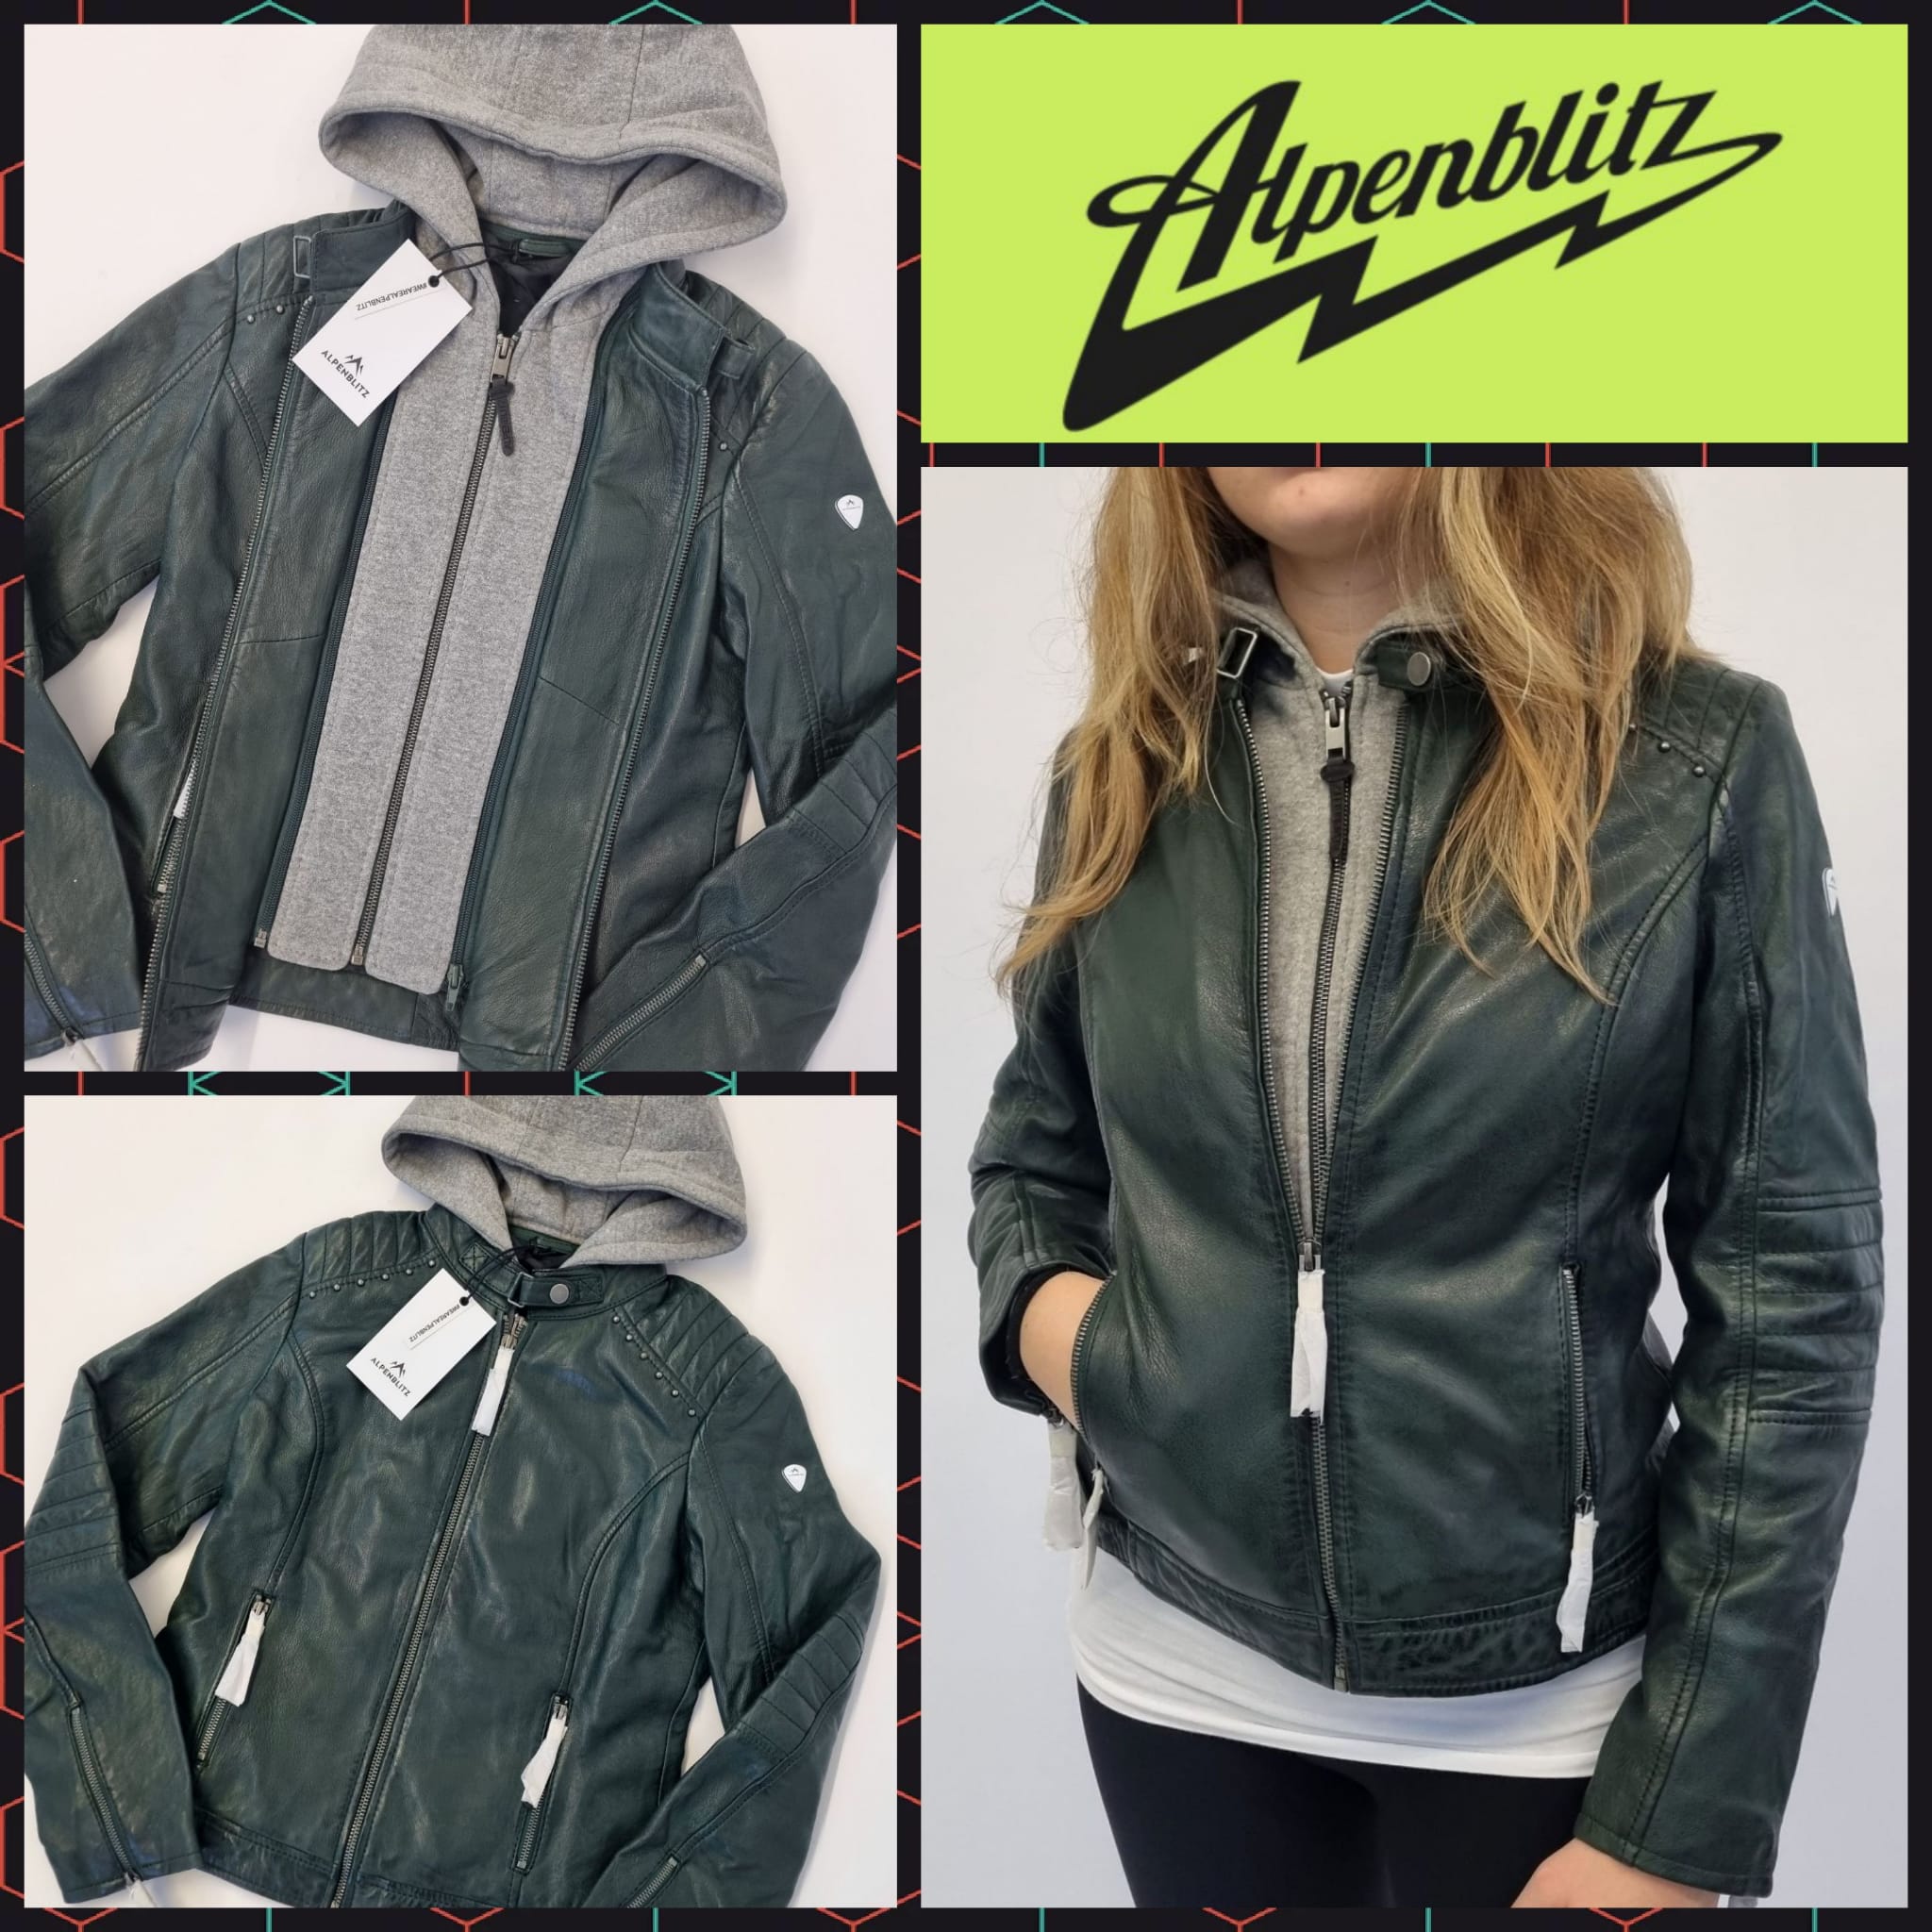 Alpenblitz Women's Green Leather Jacket